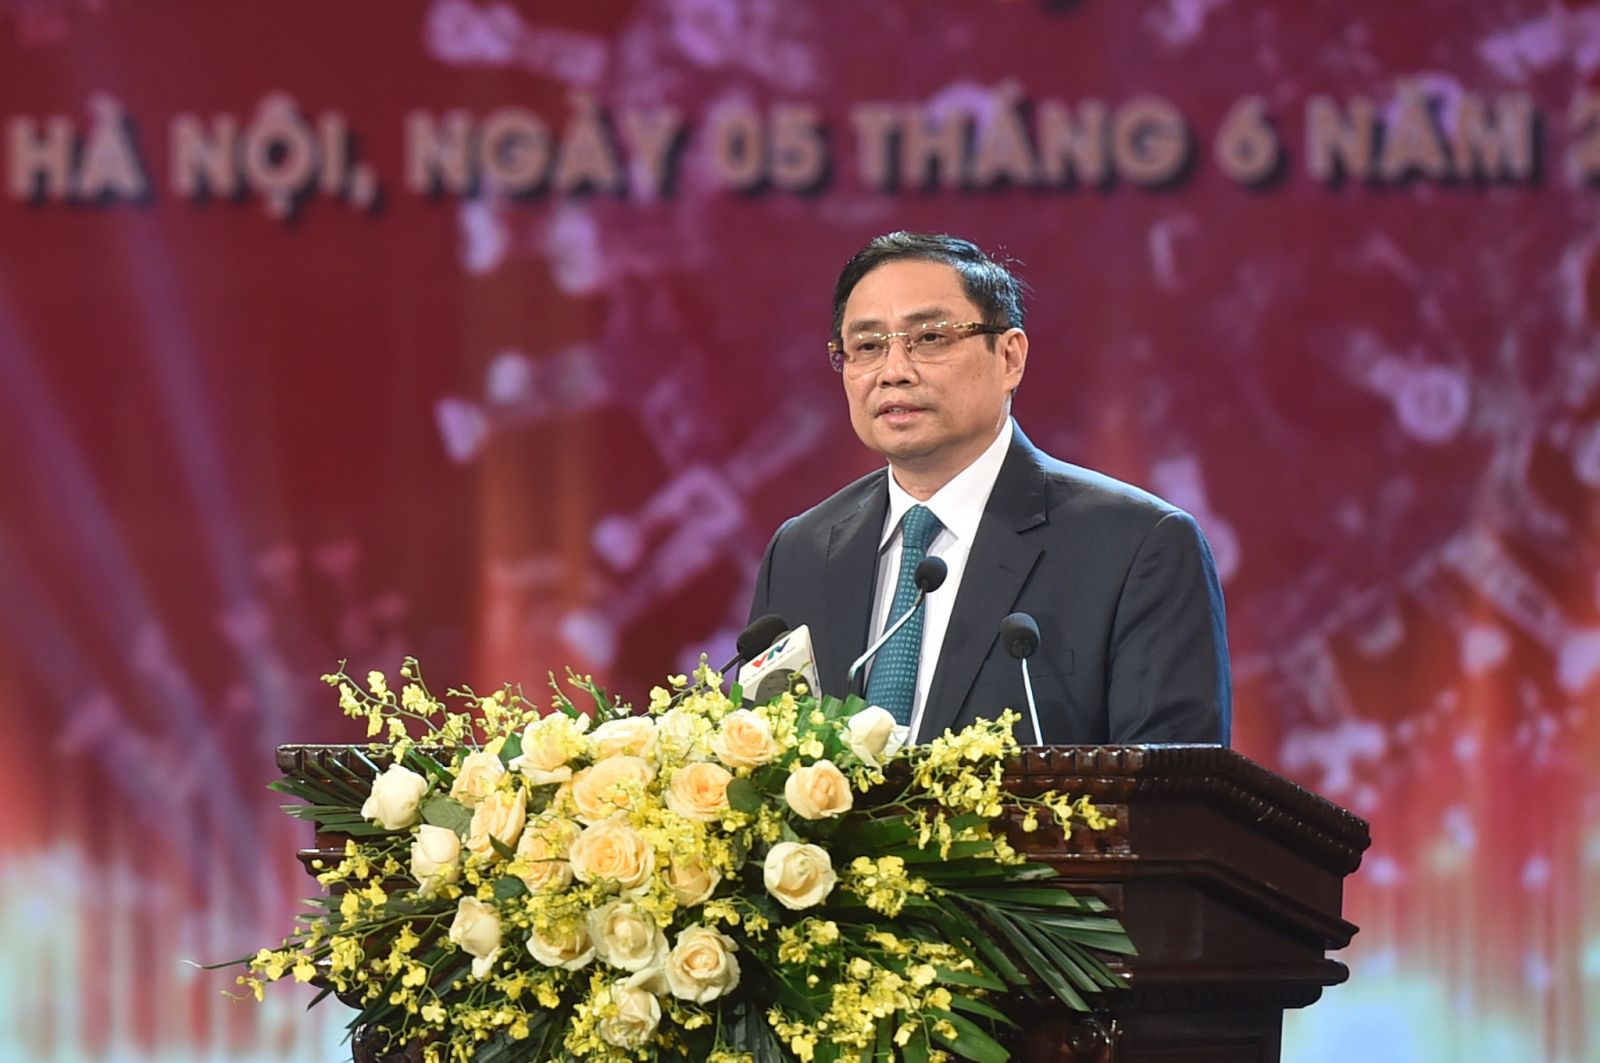 Thủ tướng Phạm Minh Chính khẳng định trong phương pháp chống dịch, chúng ta không lựa chọn giải pháp dễ làm mà có thể ảnh hưởng đến cuộc sống của người dân và phát triển kinh tế - xã hội